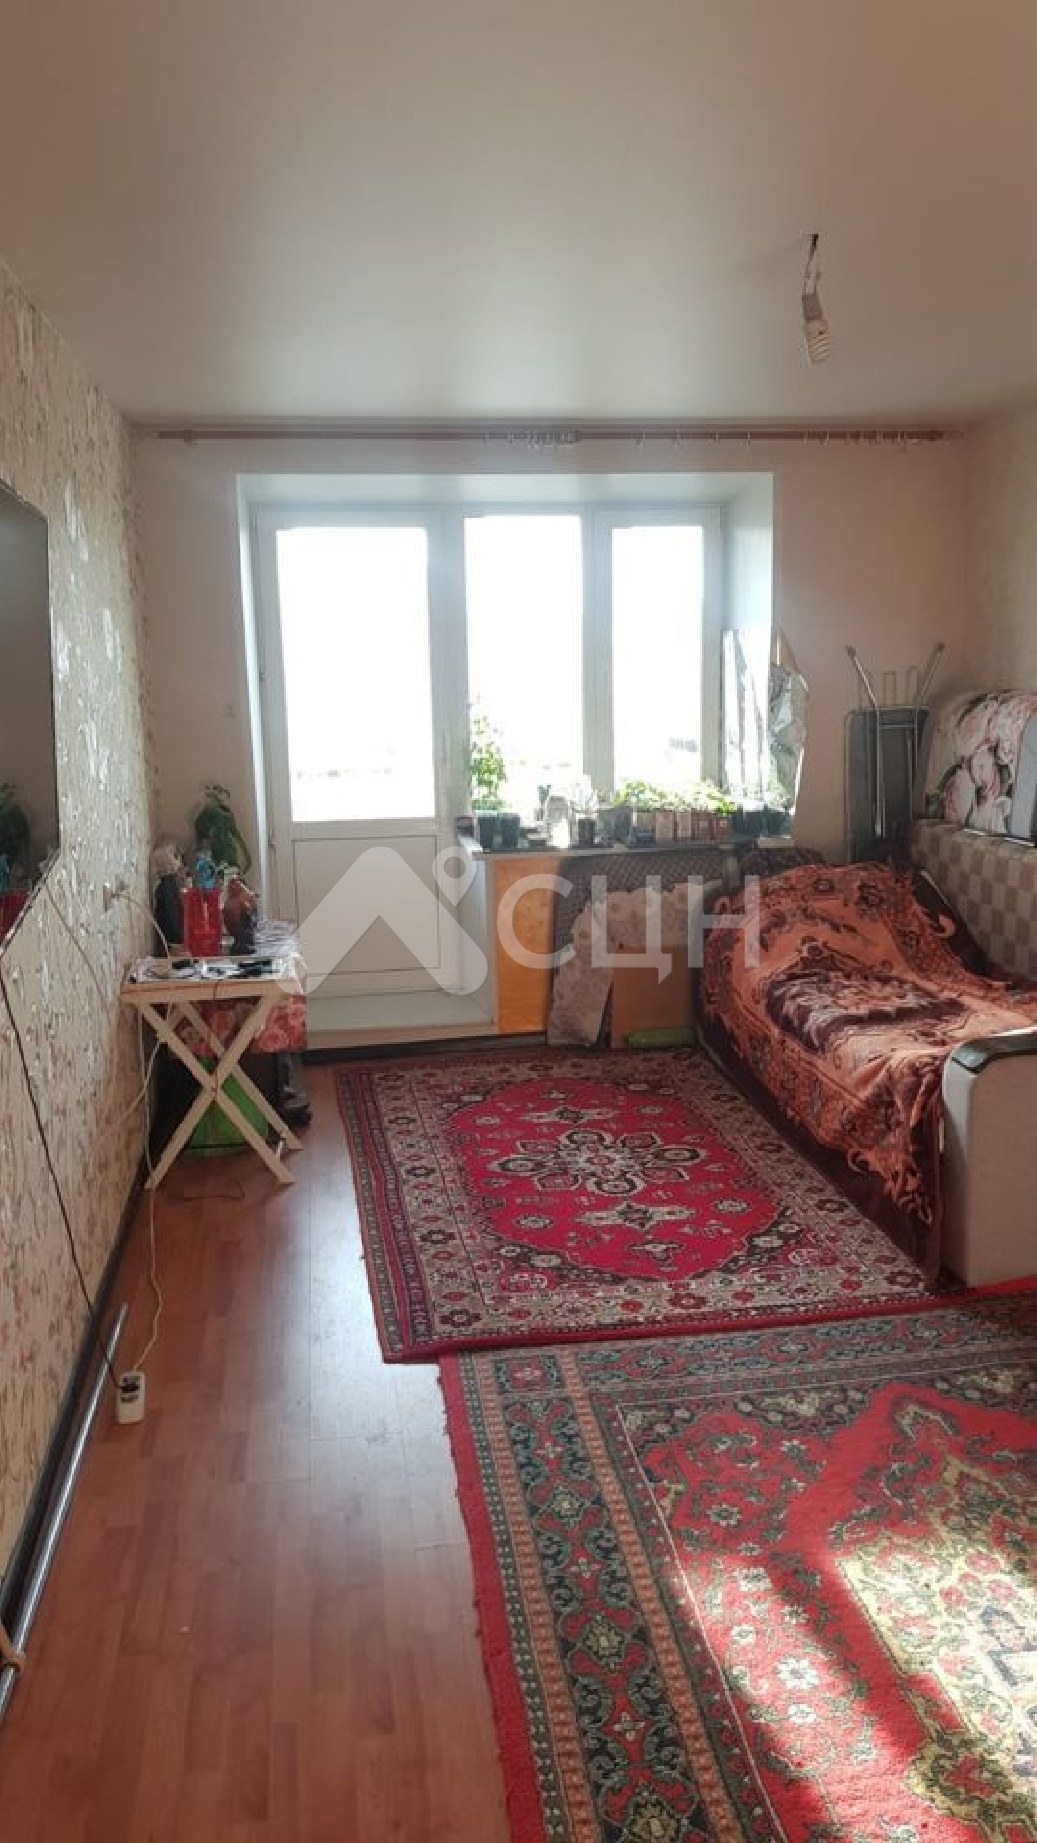 авито саров квартиры
: Г. Саров, улица Курчатова, 19, 2-комн квартира, этаж 5 из 5, продажа.